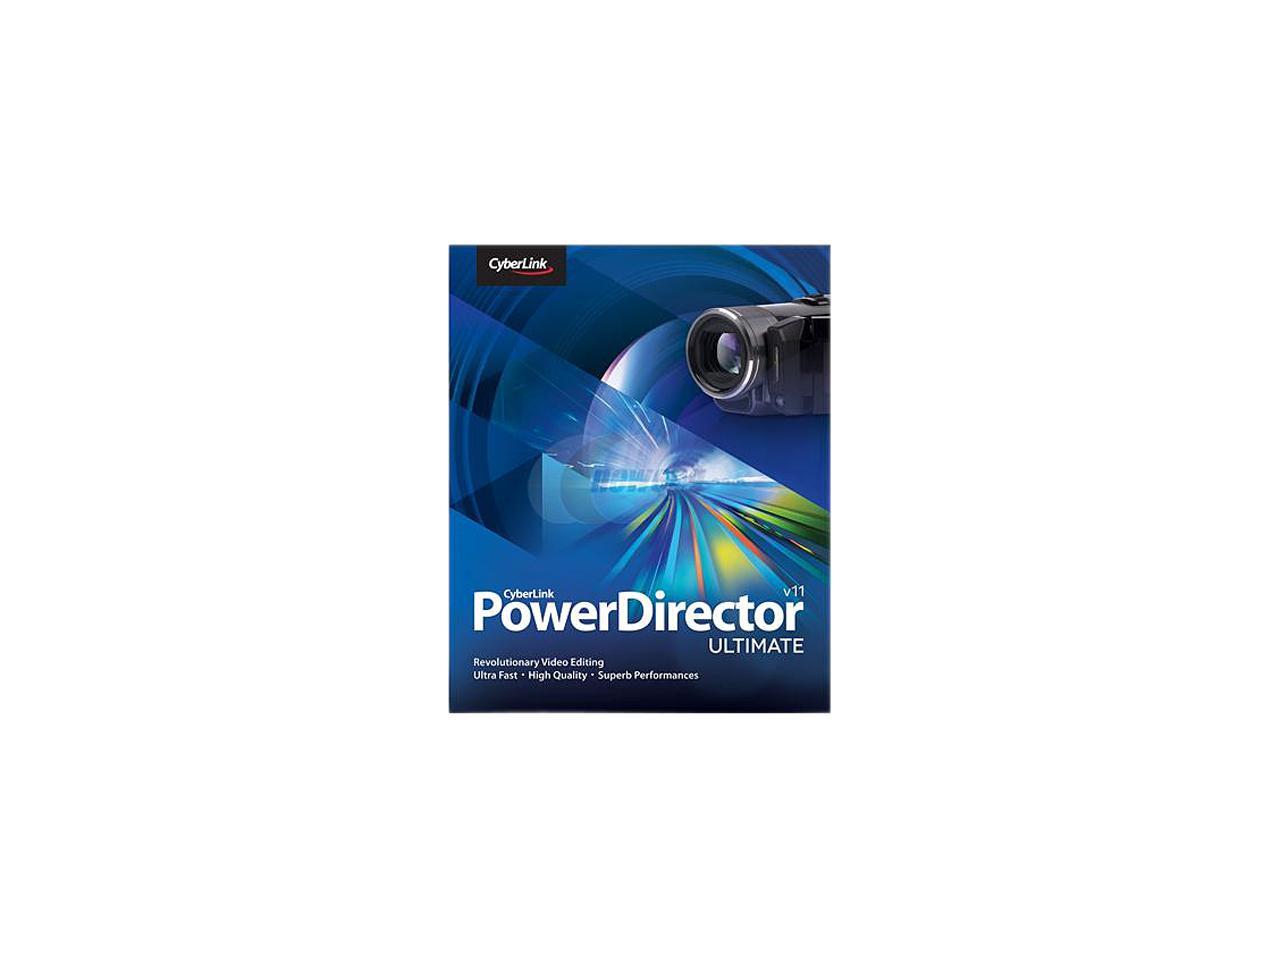 cyberlink powerdirector 11 ultimate download